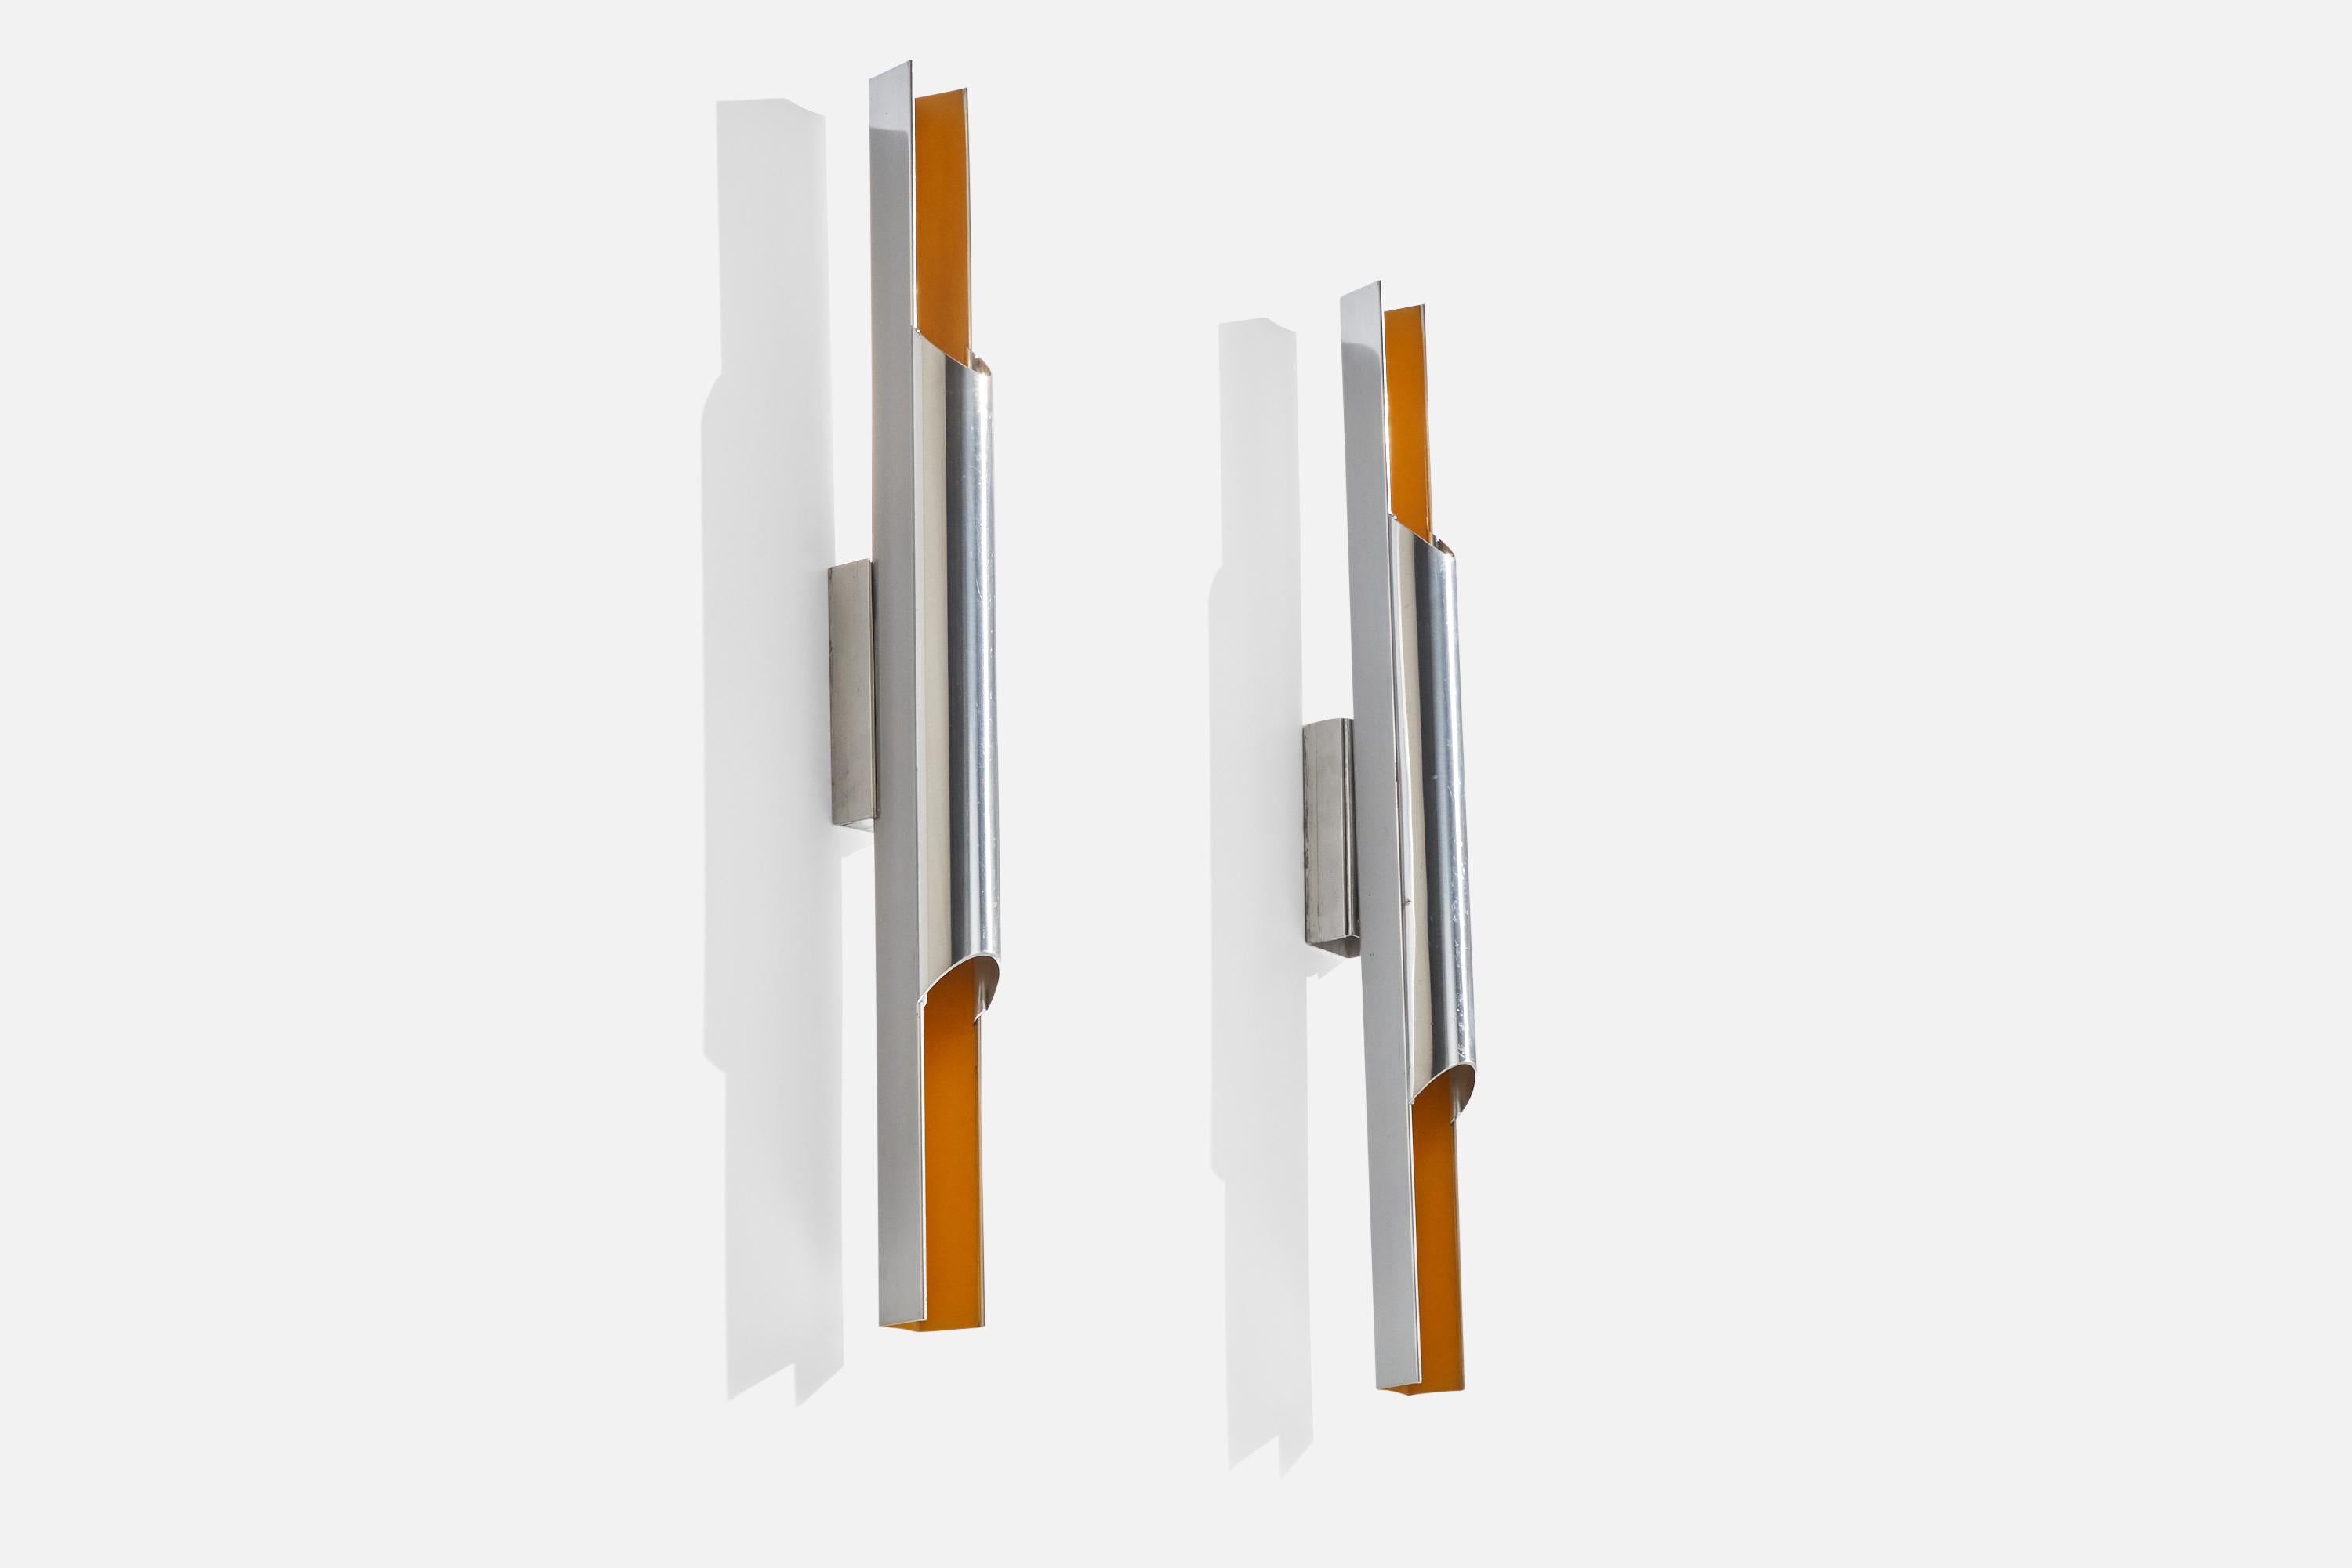 Paire d'appliques en aluminium laqué orange conçues par Bent Karlby et produites par Lyfa, Danemark, années 1960.

Dimensions globales (pouces) : 23.75